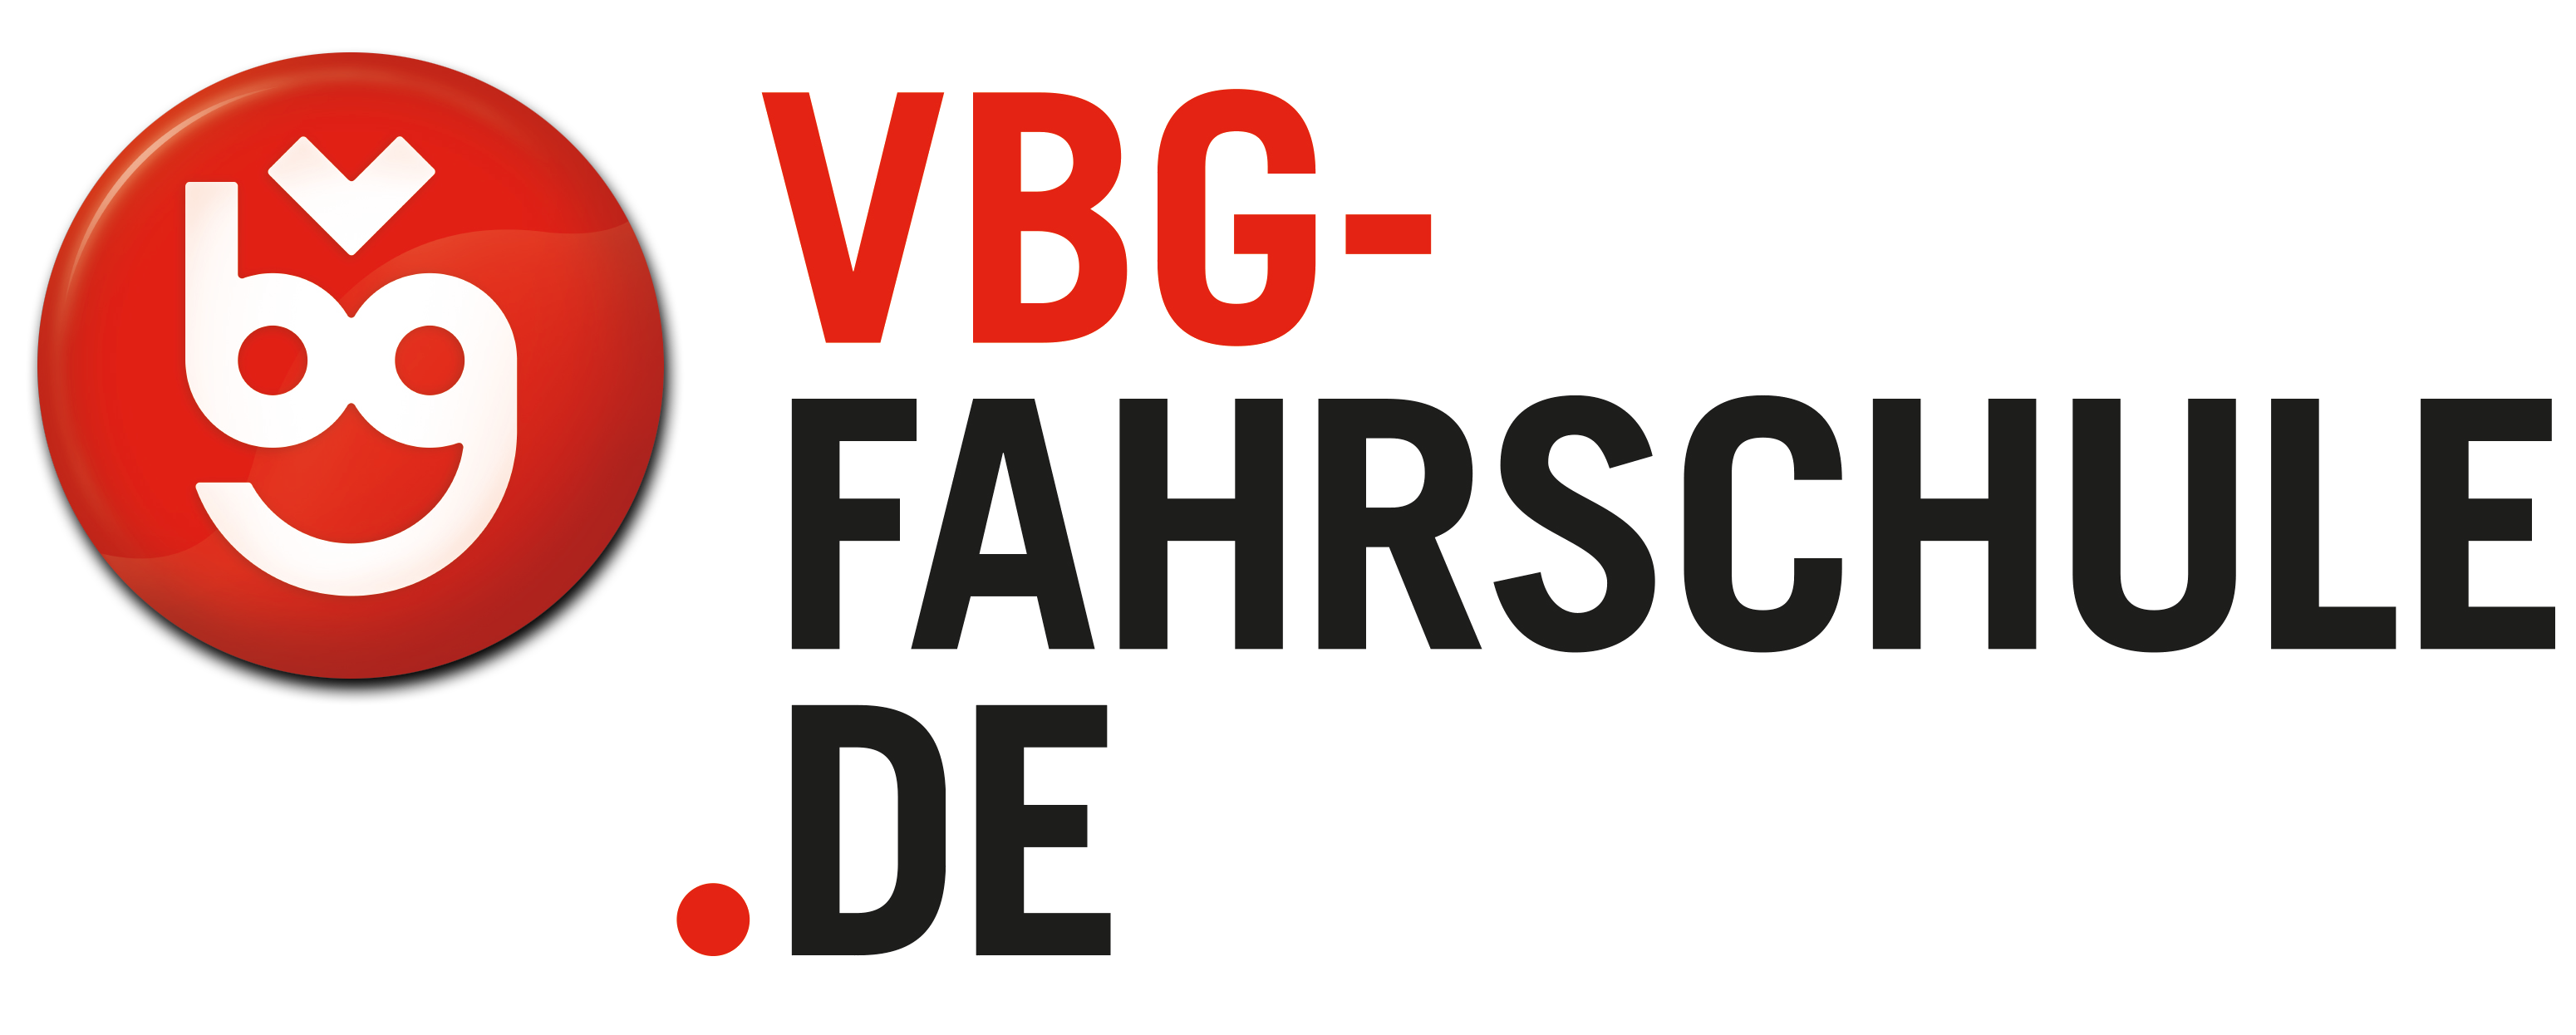 VBG Fahrschule